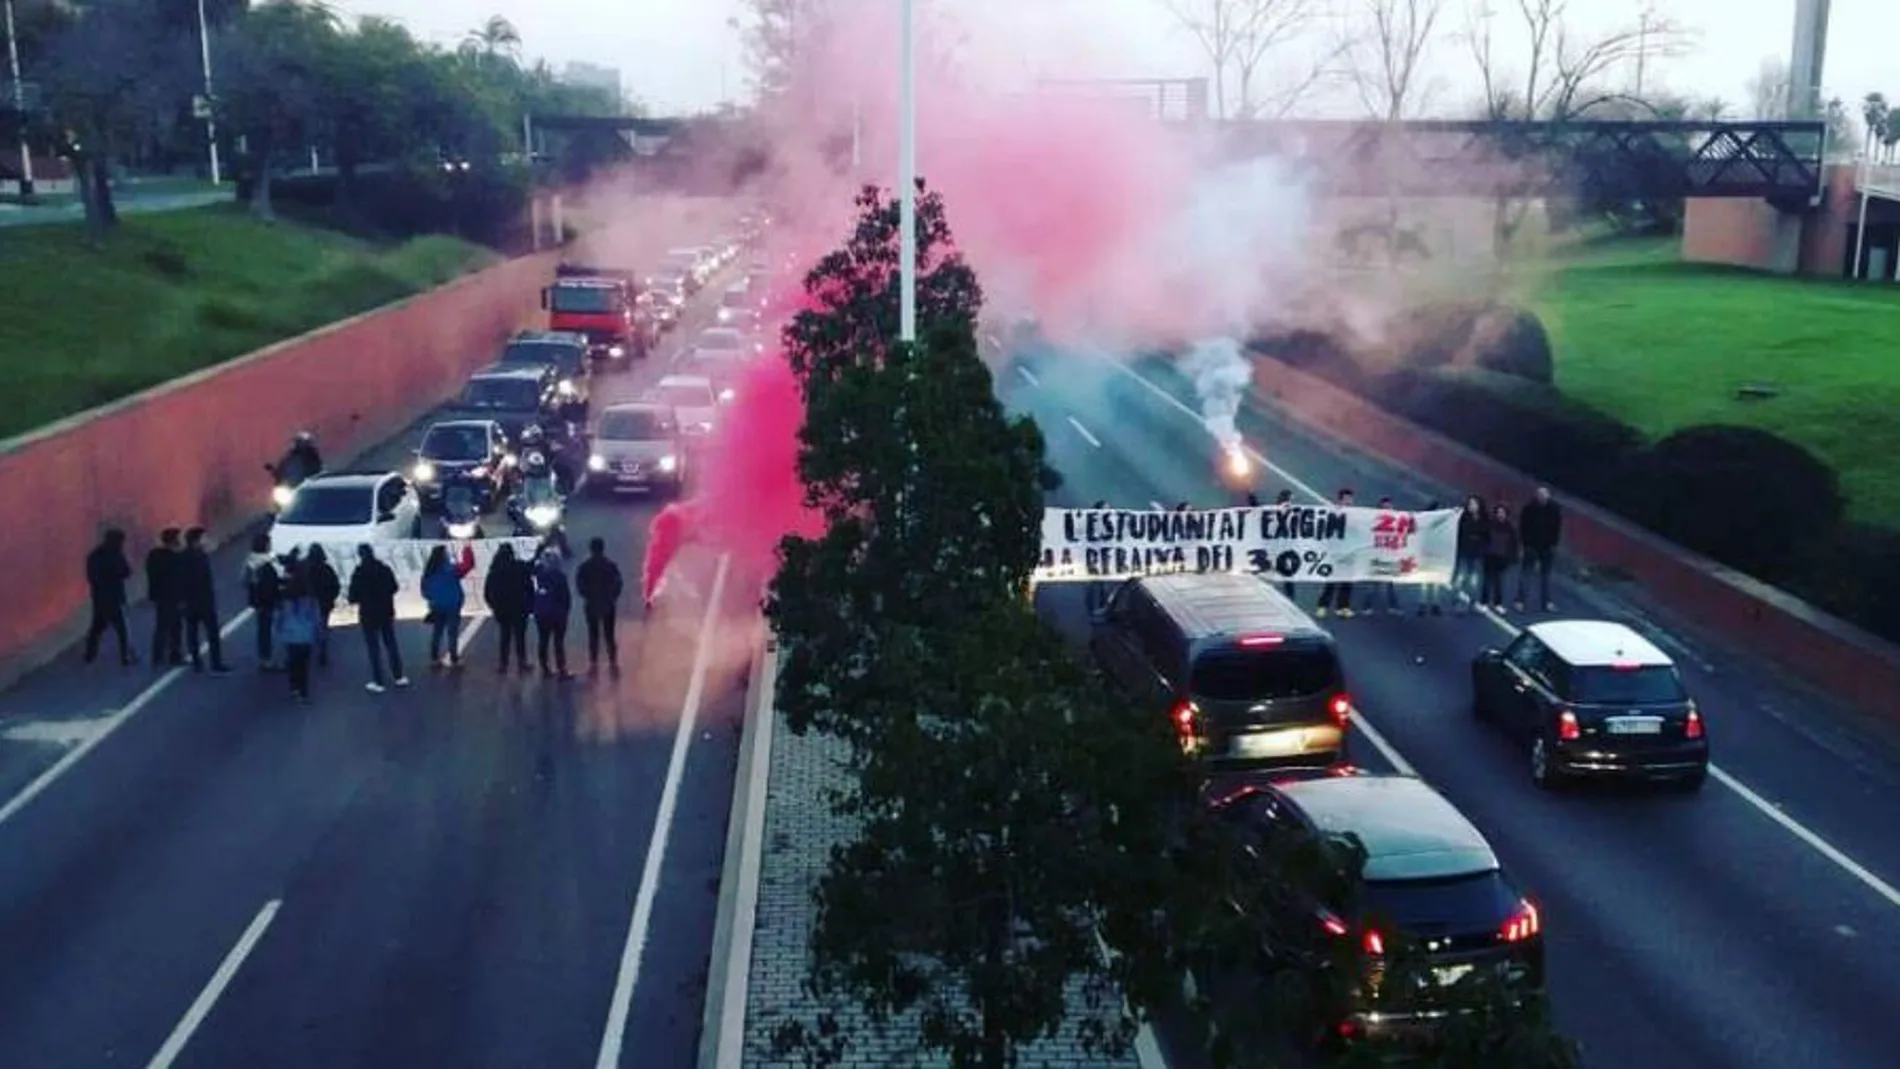 Imagen de los disturbios difundida por Sindicat d'Estudiants dels Països Catalans